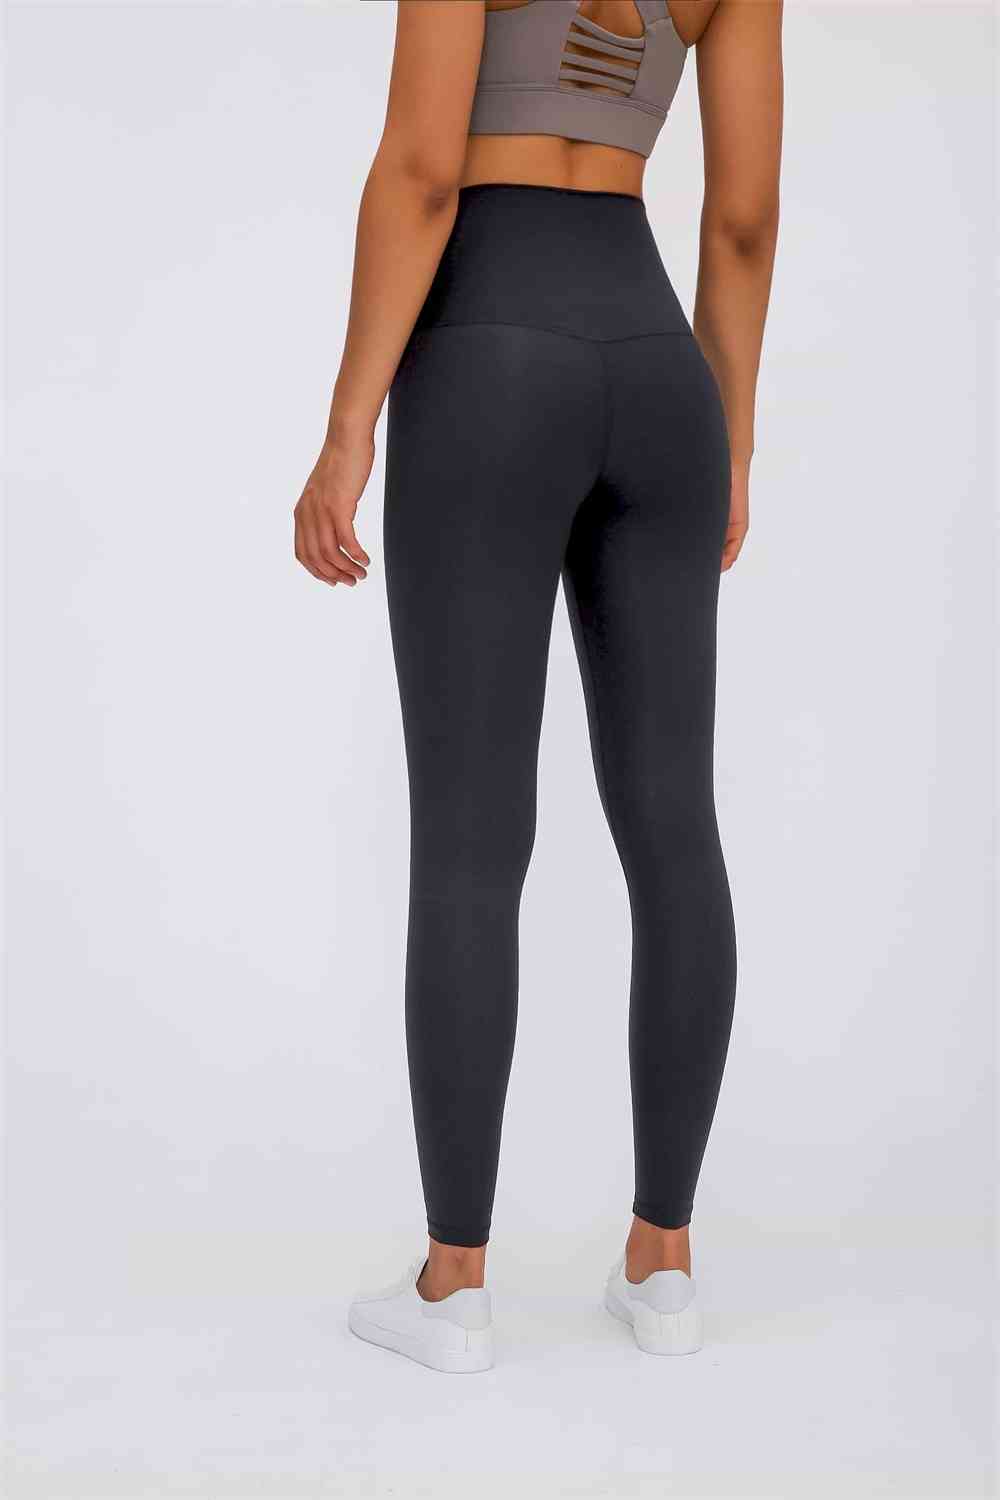 Lumana Leakproof Yoga Pant Leggings, 22 Inseam, Black, 3X, Single Pair